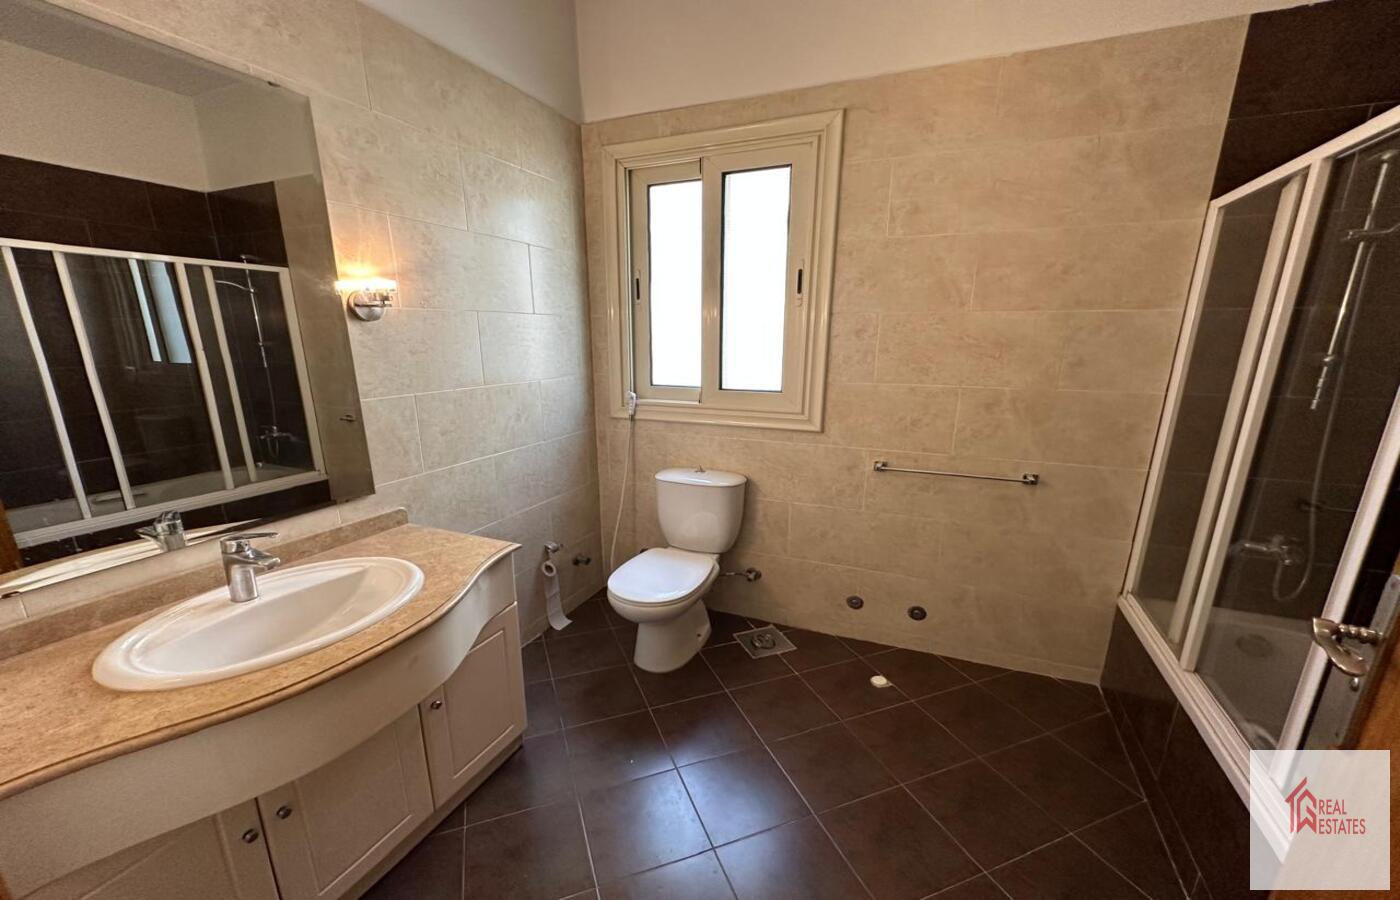 2. daire birinci katta 3 yatak odası 2 banyo çamaşırhane açık mutfaklı geniş salon ve havuzlu geniş bahçe. Kira 4200 USD